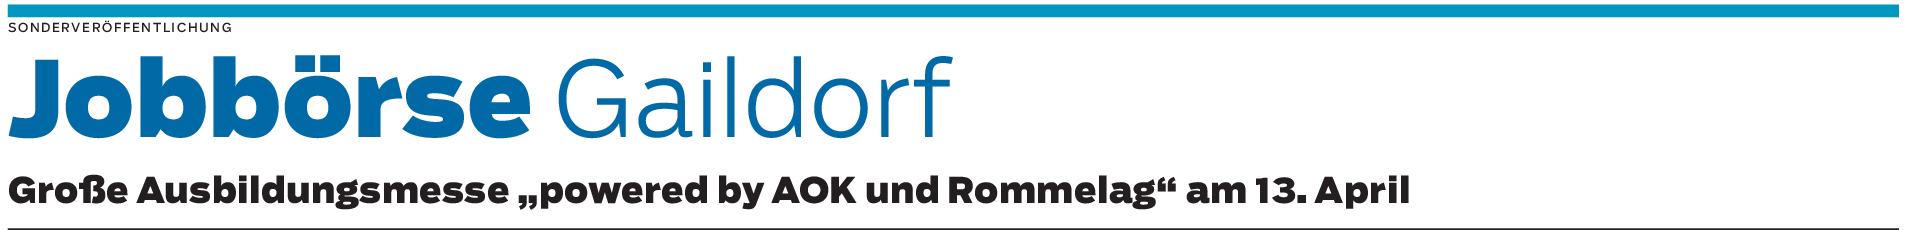 Die AOK unterstützt die Jobbörse in Gaildorf: Orientierung geben